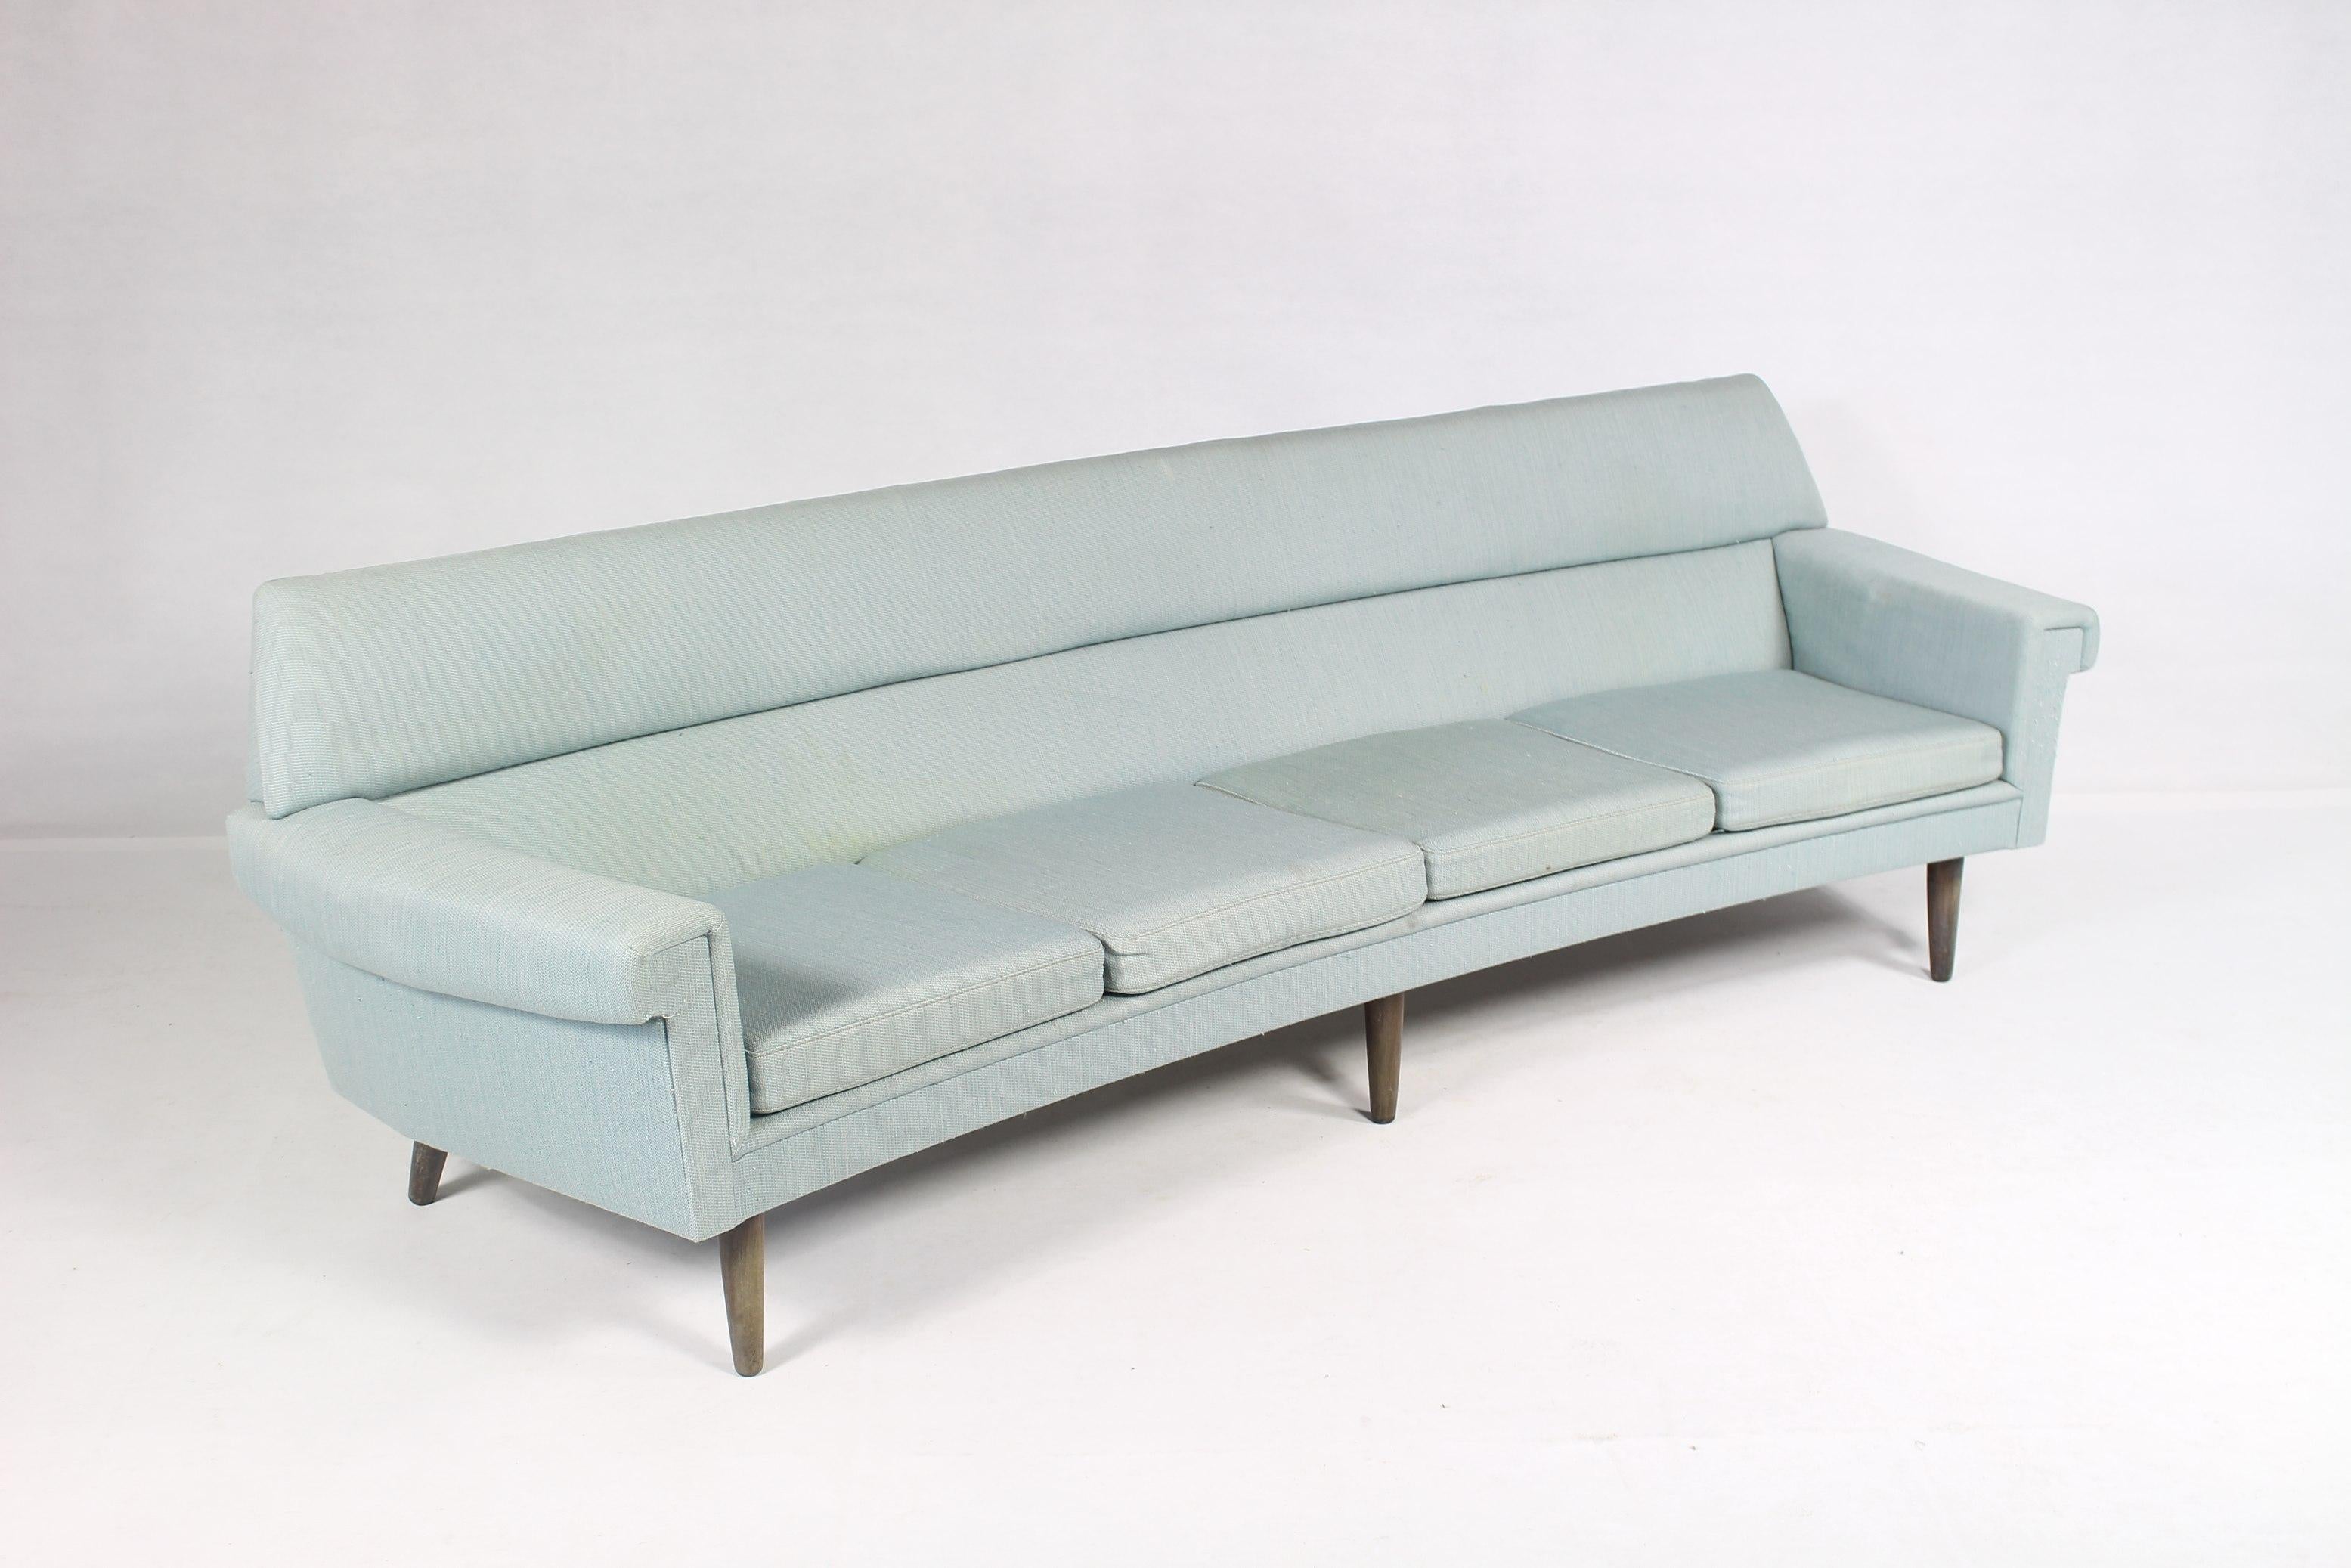 Ce canapé incurvé à quatre places de Kurt stervig est une création de Kurt Stervig.
Fabriqué au Danemark, dans les années 1960.
Tapissé de la laine d'origine en bleu clair.
Il est recommandé de remplacer le tissu d'ameublement.